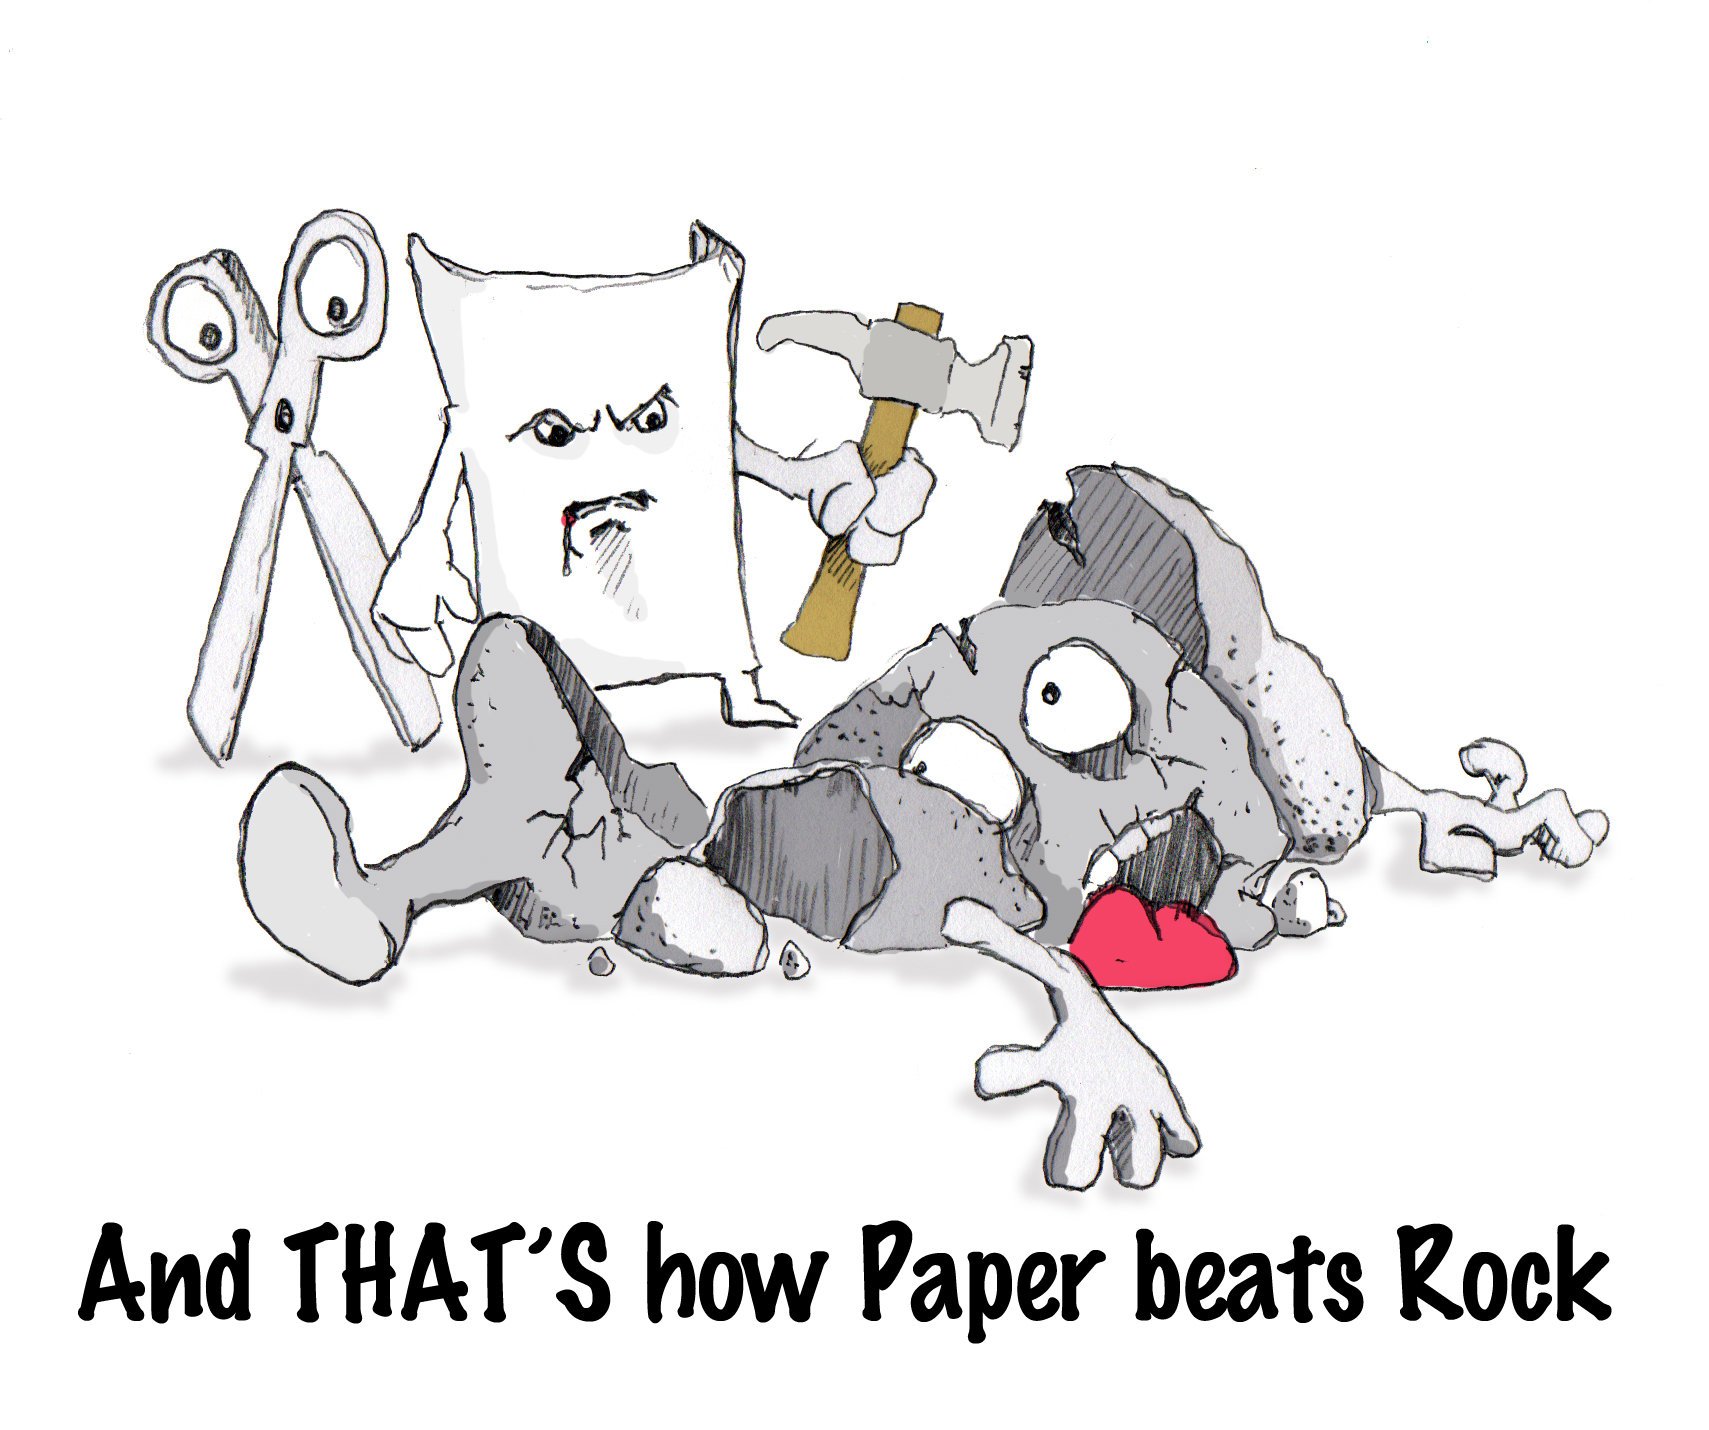 Paper beats Rock